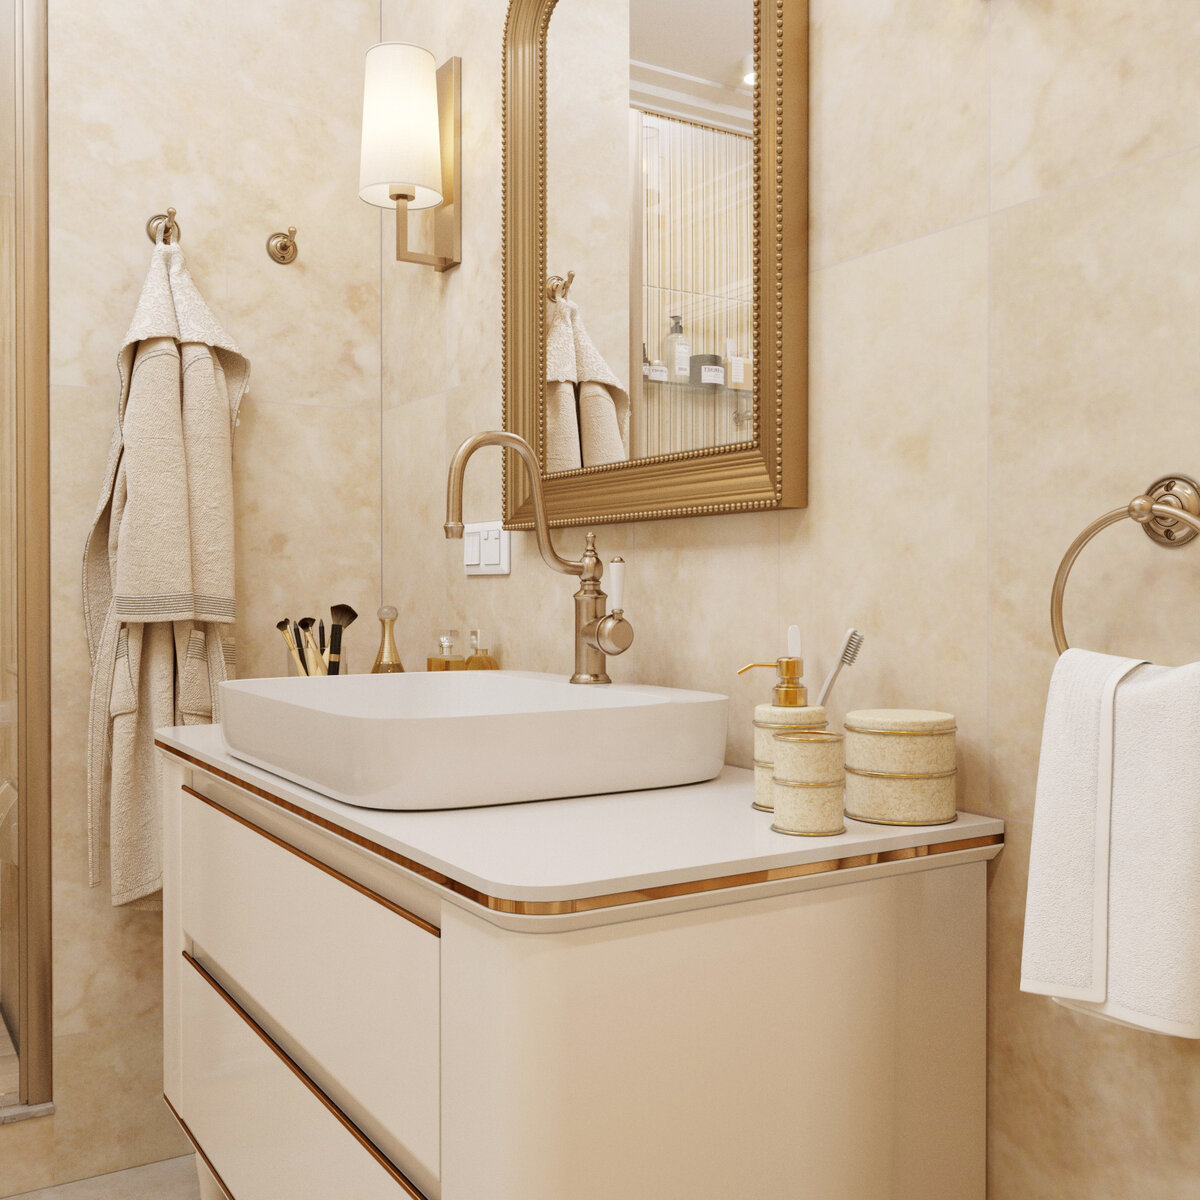 Ванная комната из белого мрамора с бронзовыми смесителями